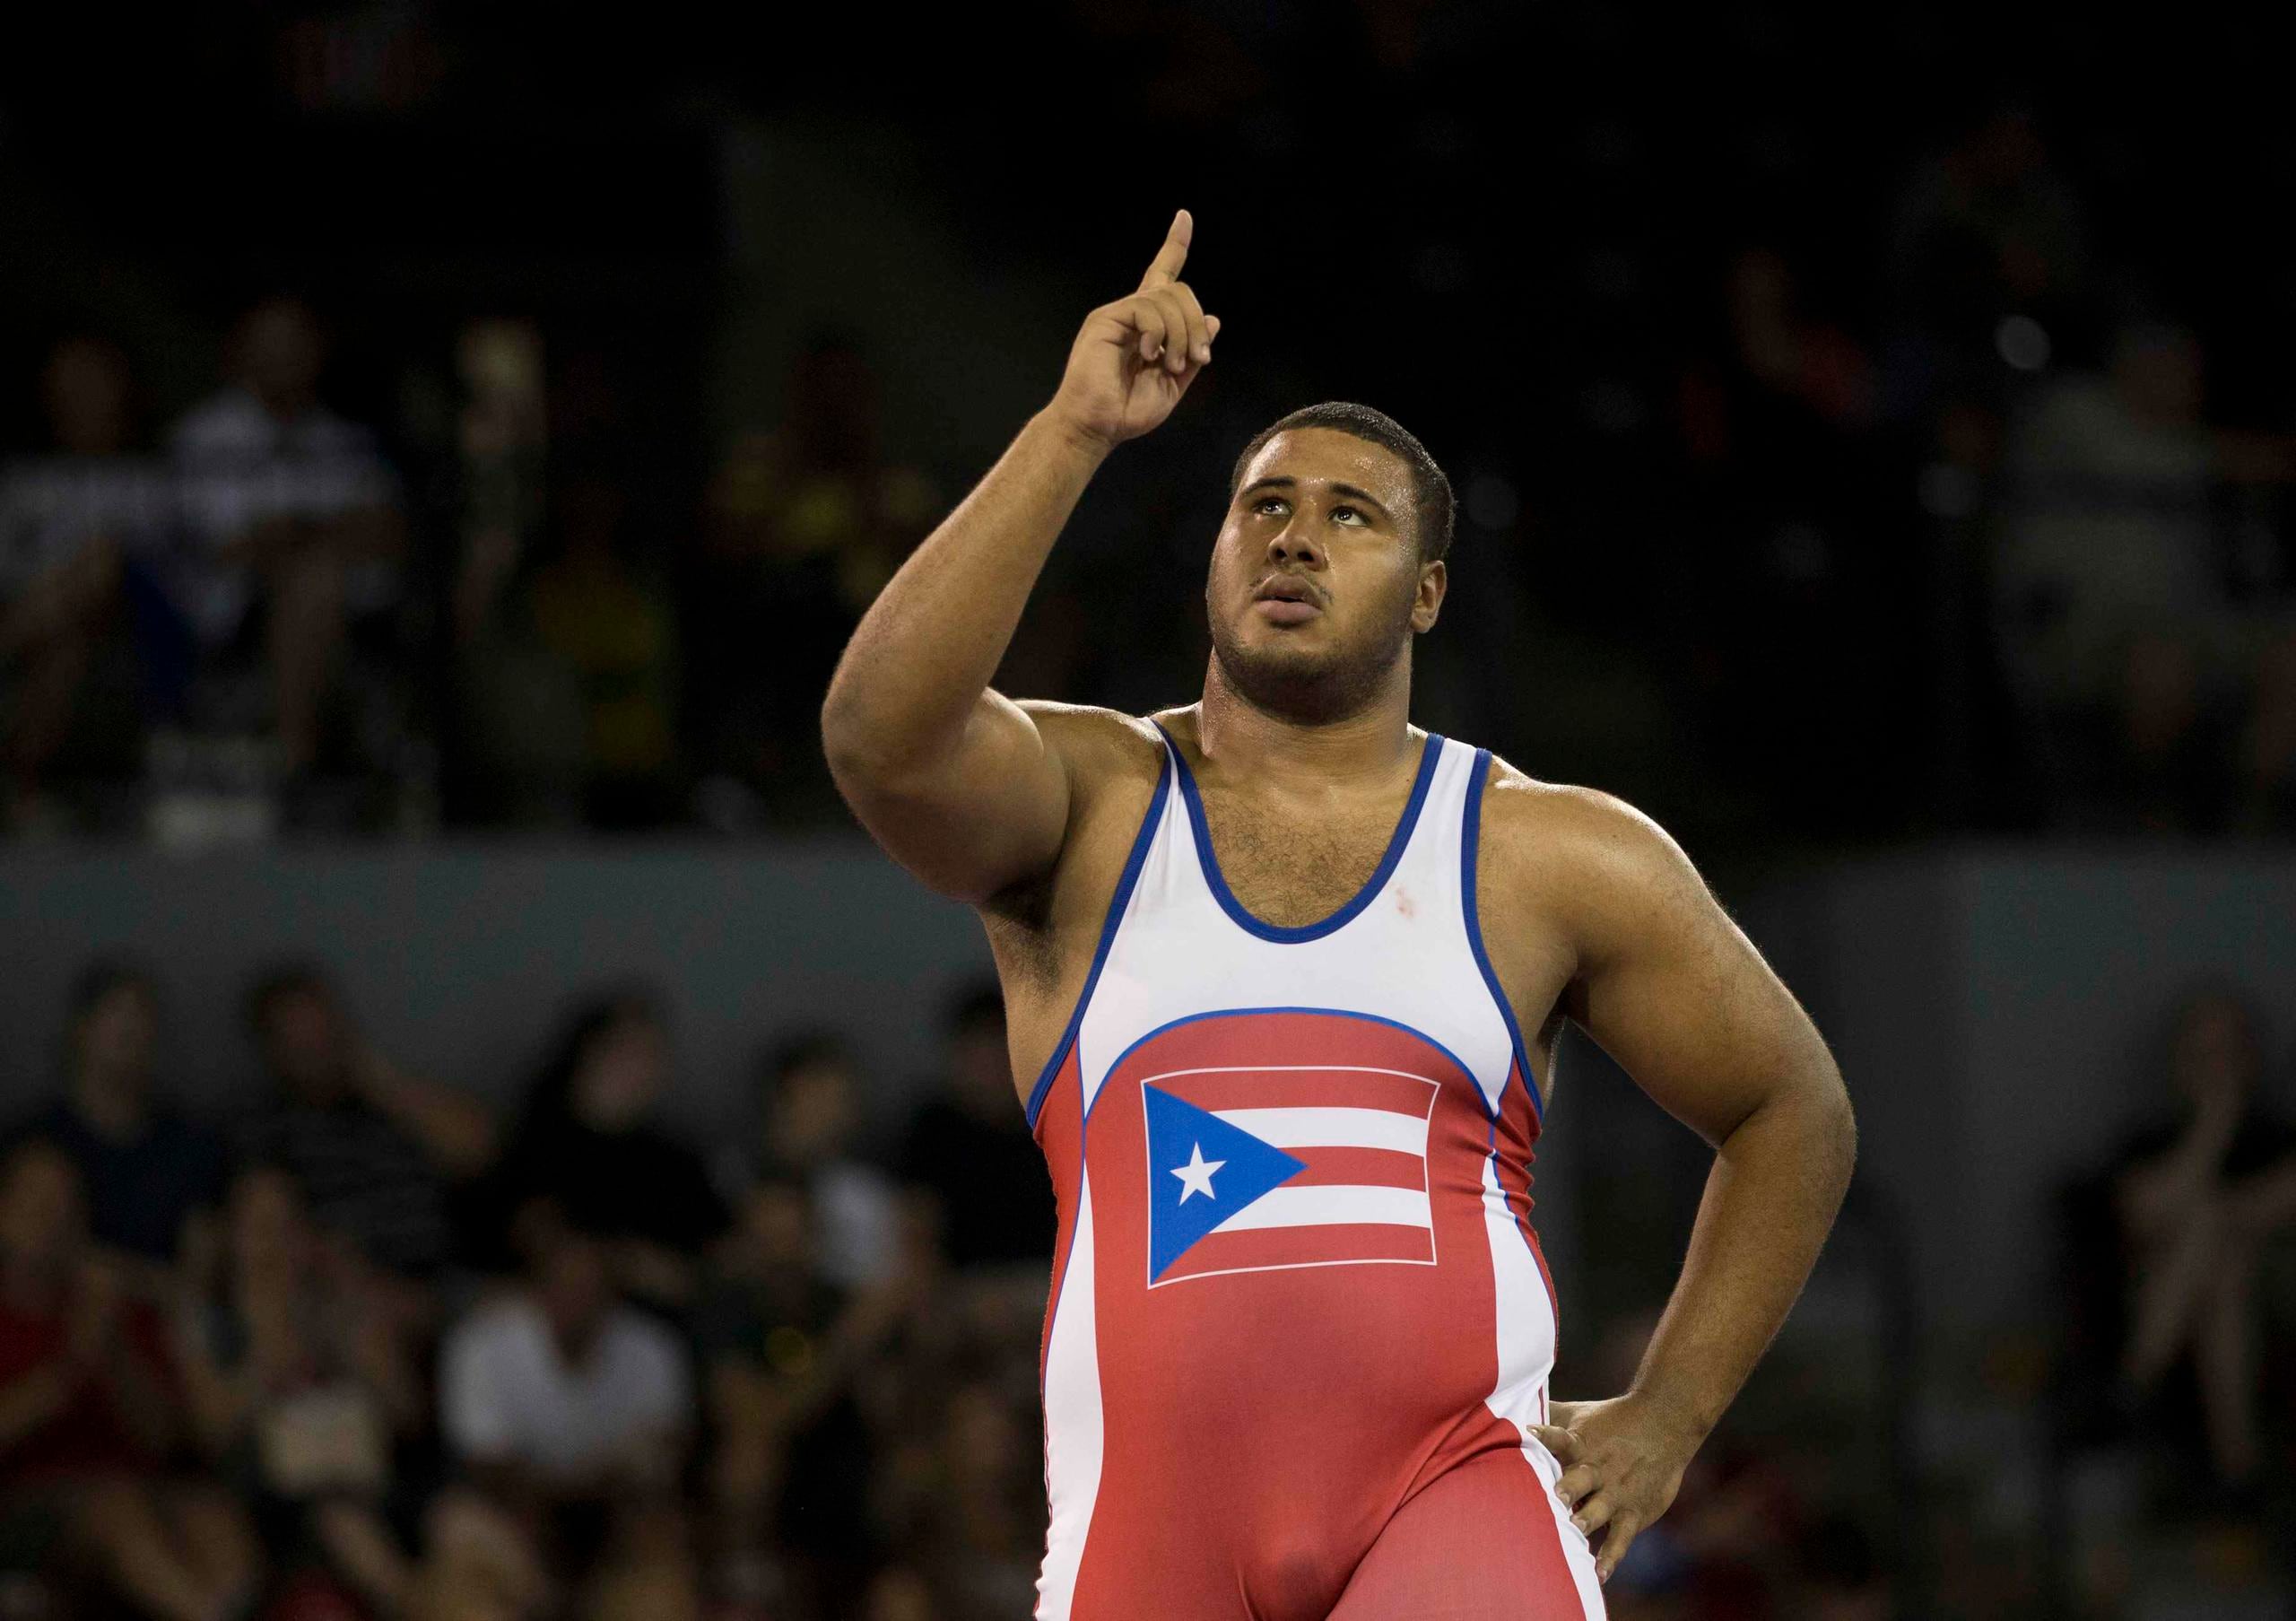 Edgardo López representó a Puerto Rico en la categoría de 125 kilogramos del estilo libre de los los XVII Juegos Panamericanos.